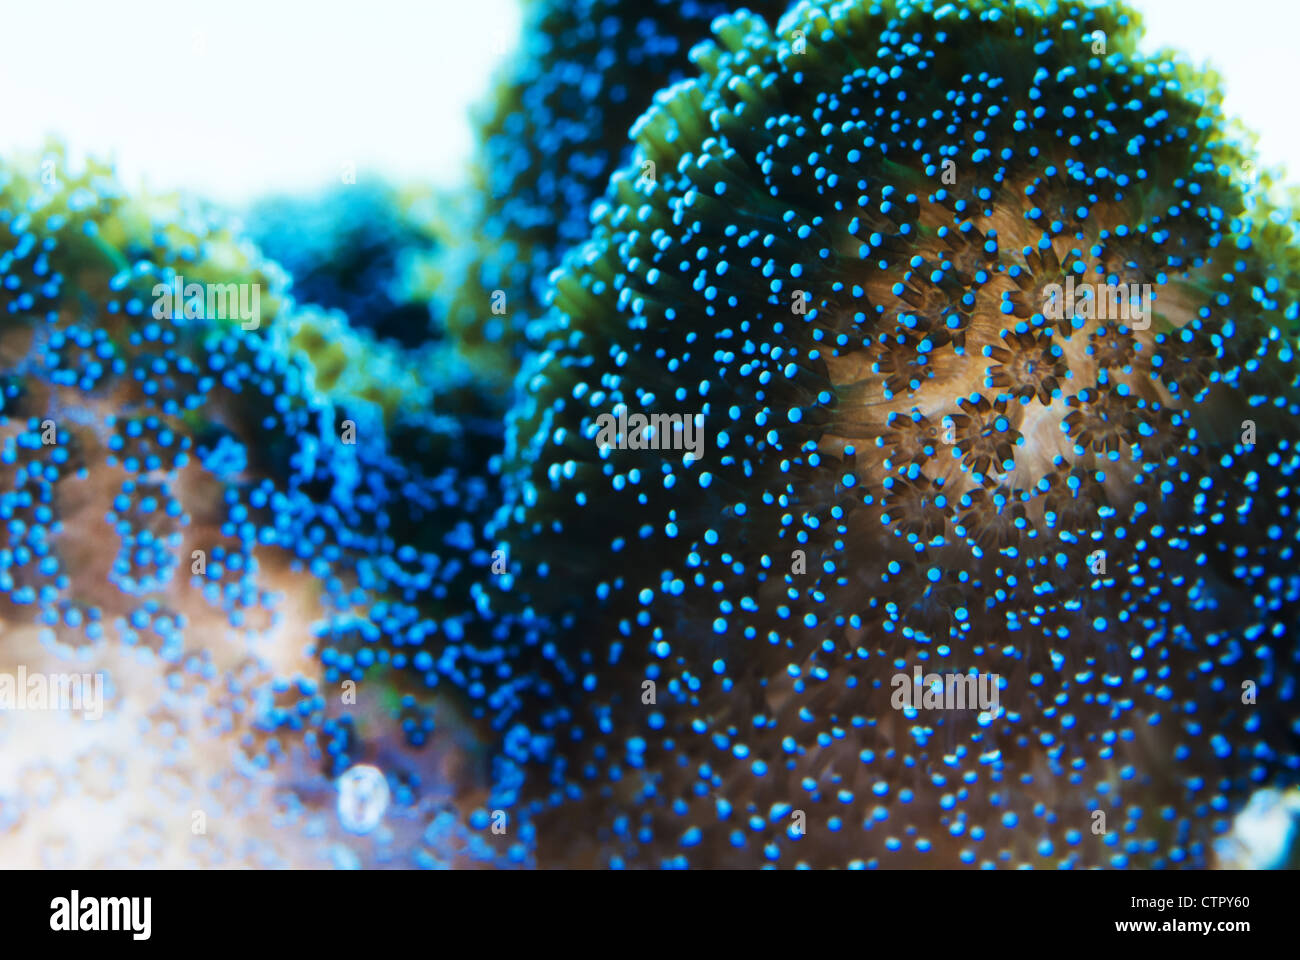 Questa è un immagine di polipi di corallo Foto Stock